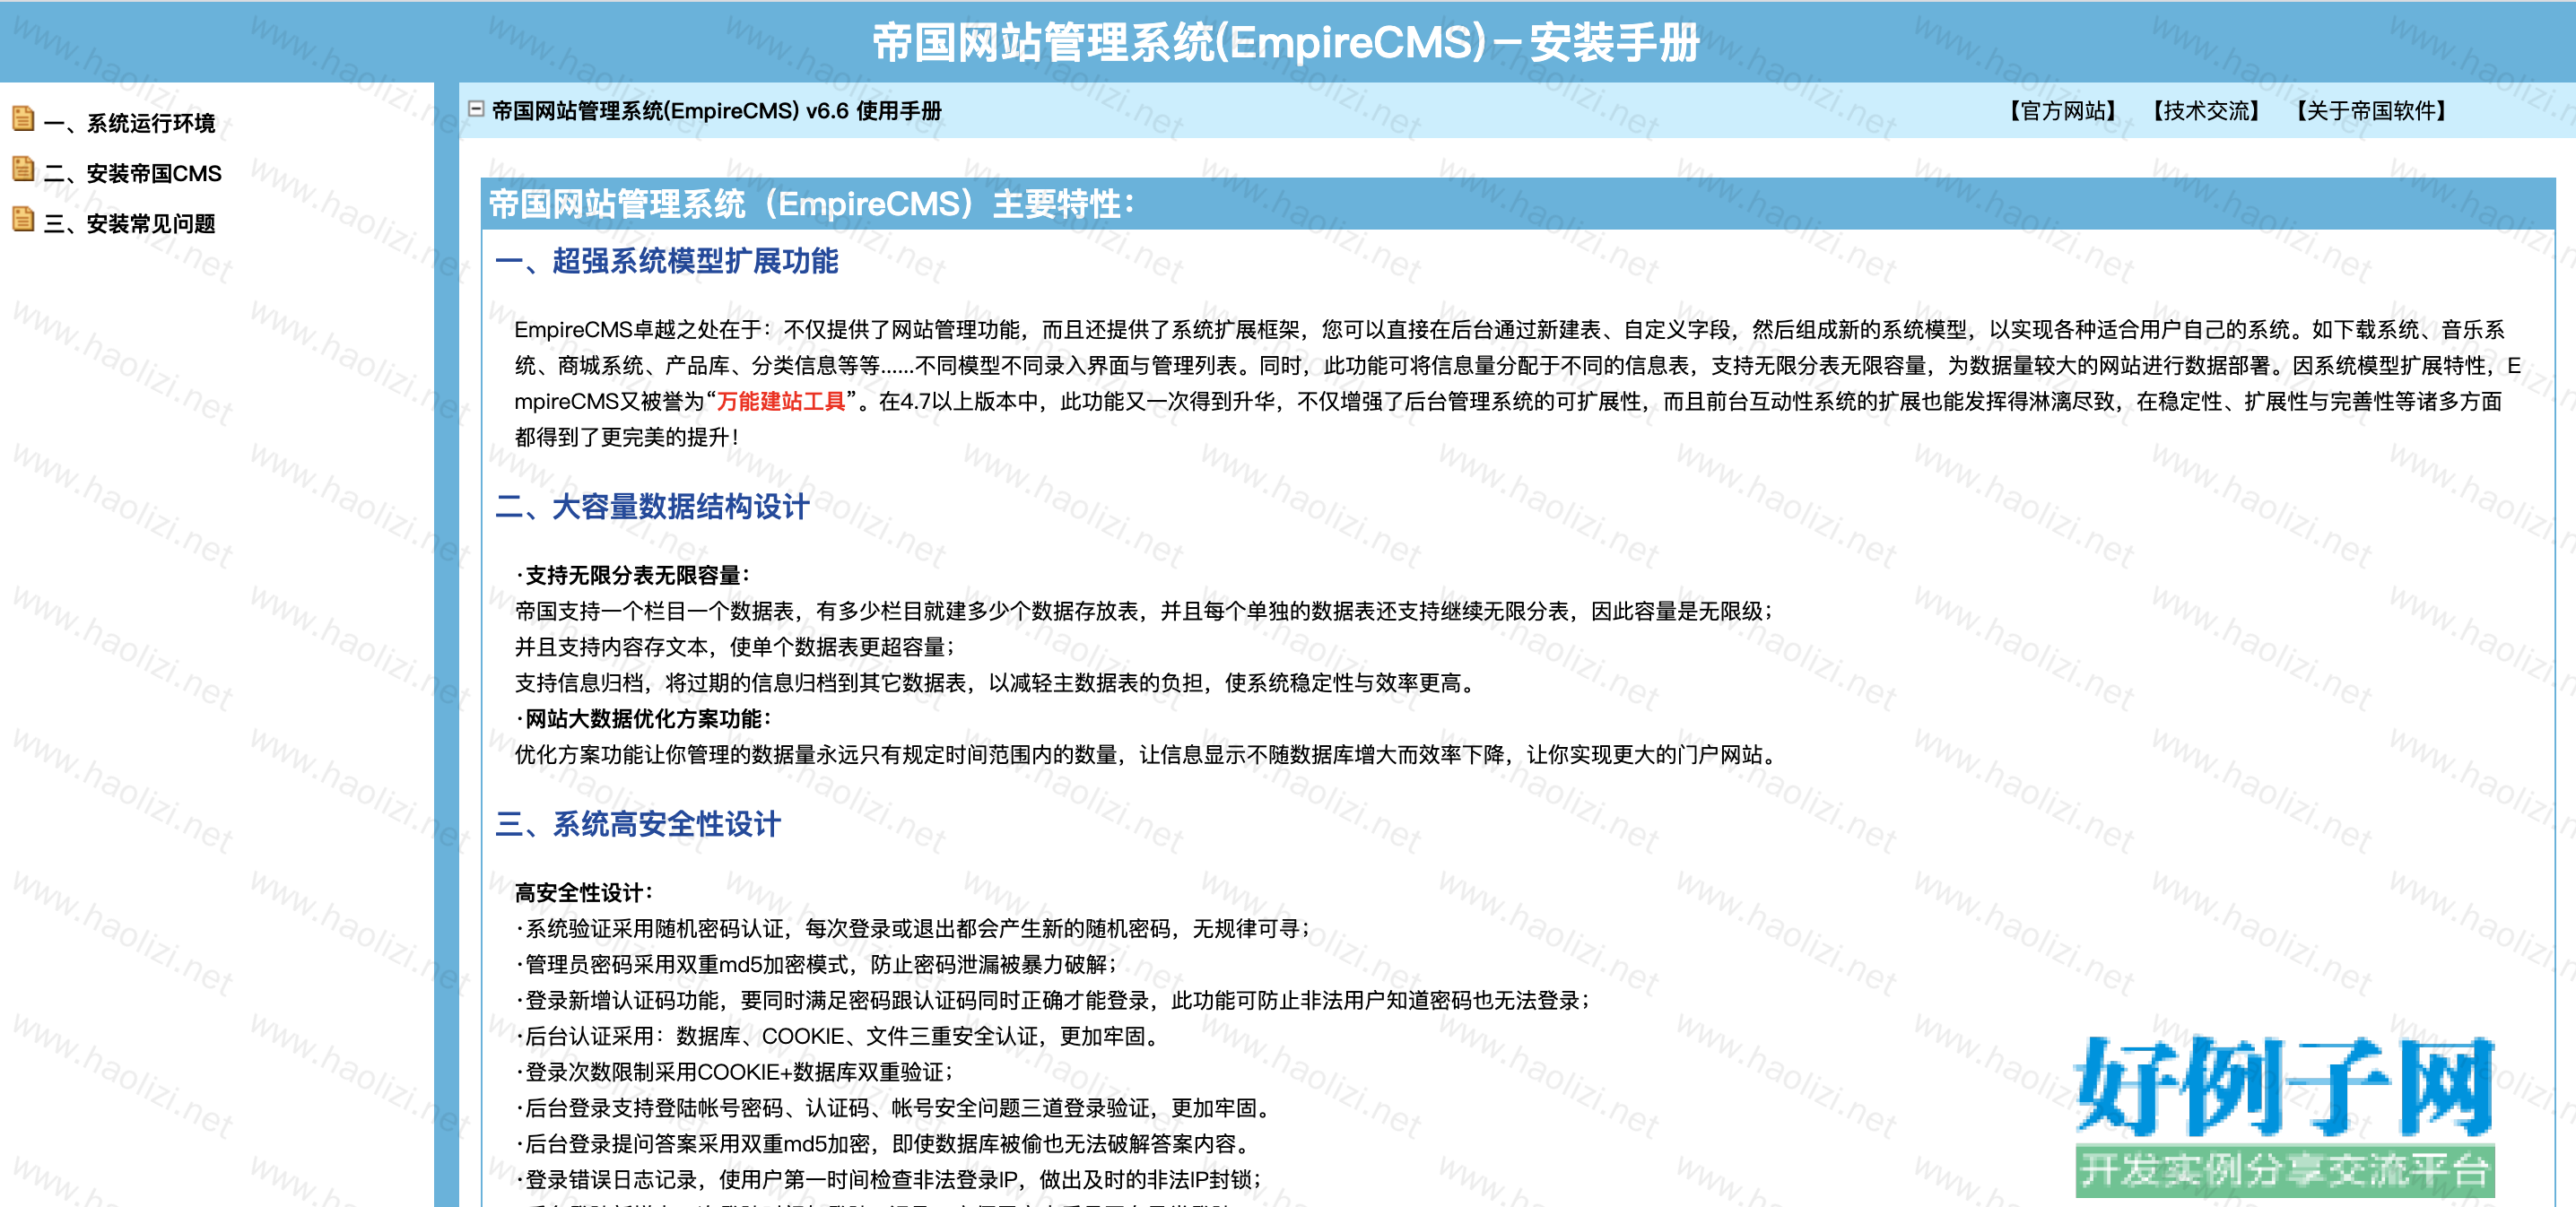 帝国CMS默认编辑器增加输入ID一键插入信息到内容的功能--墨鱼部落格